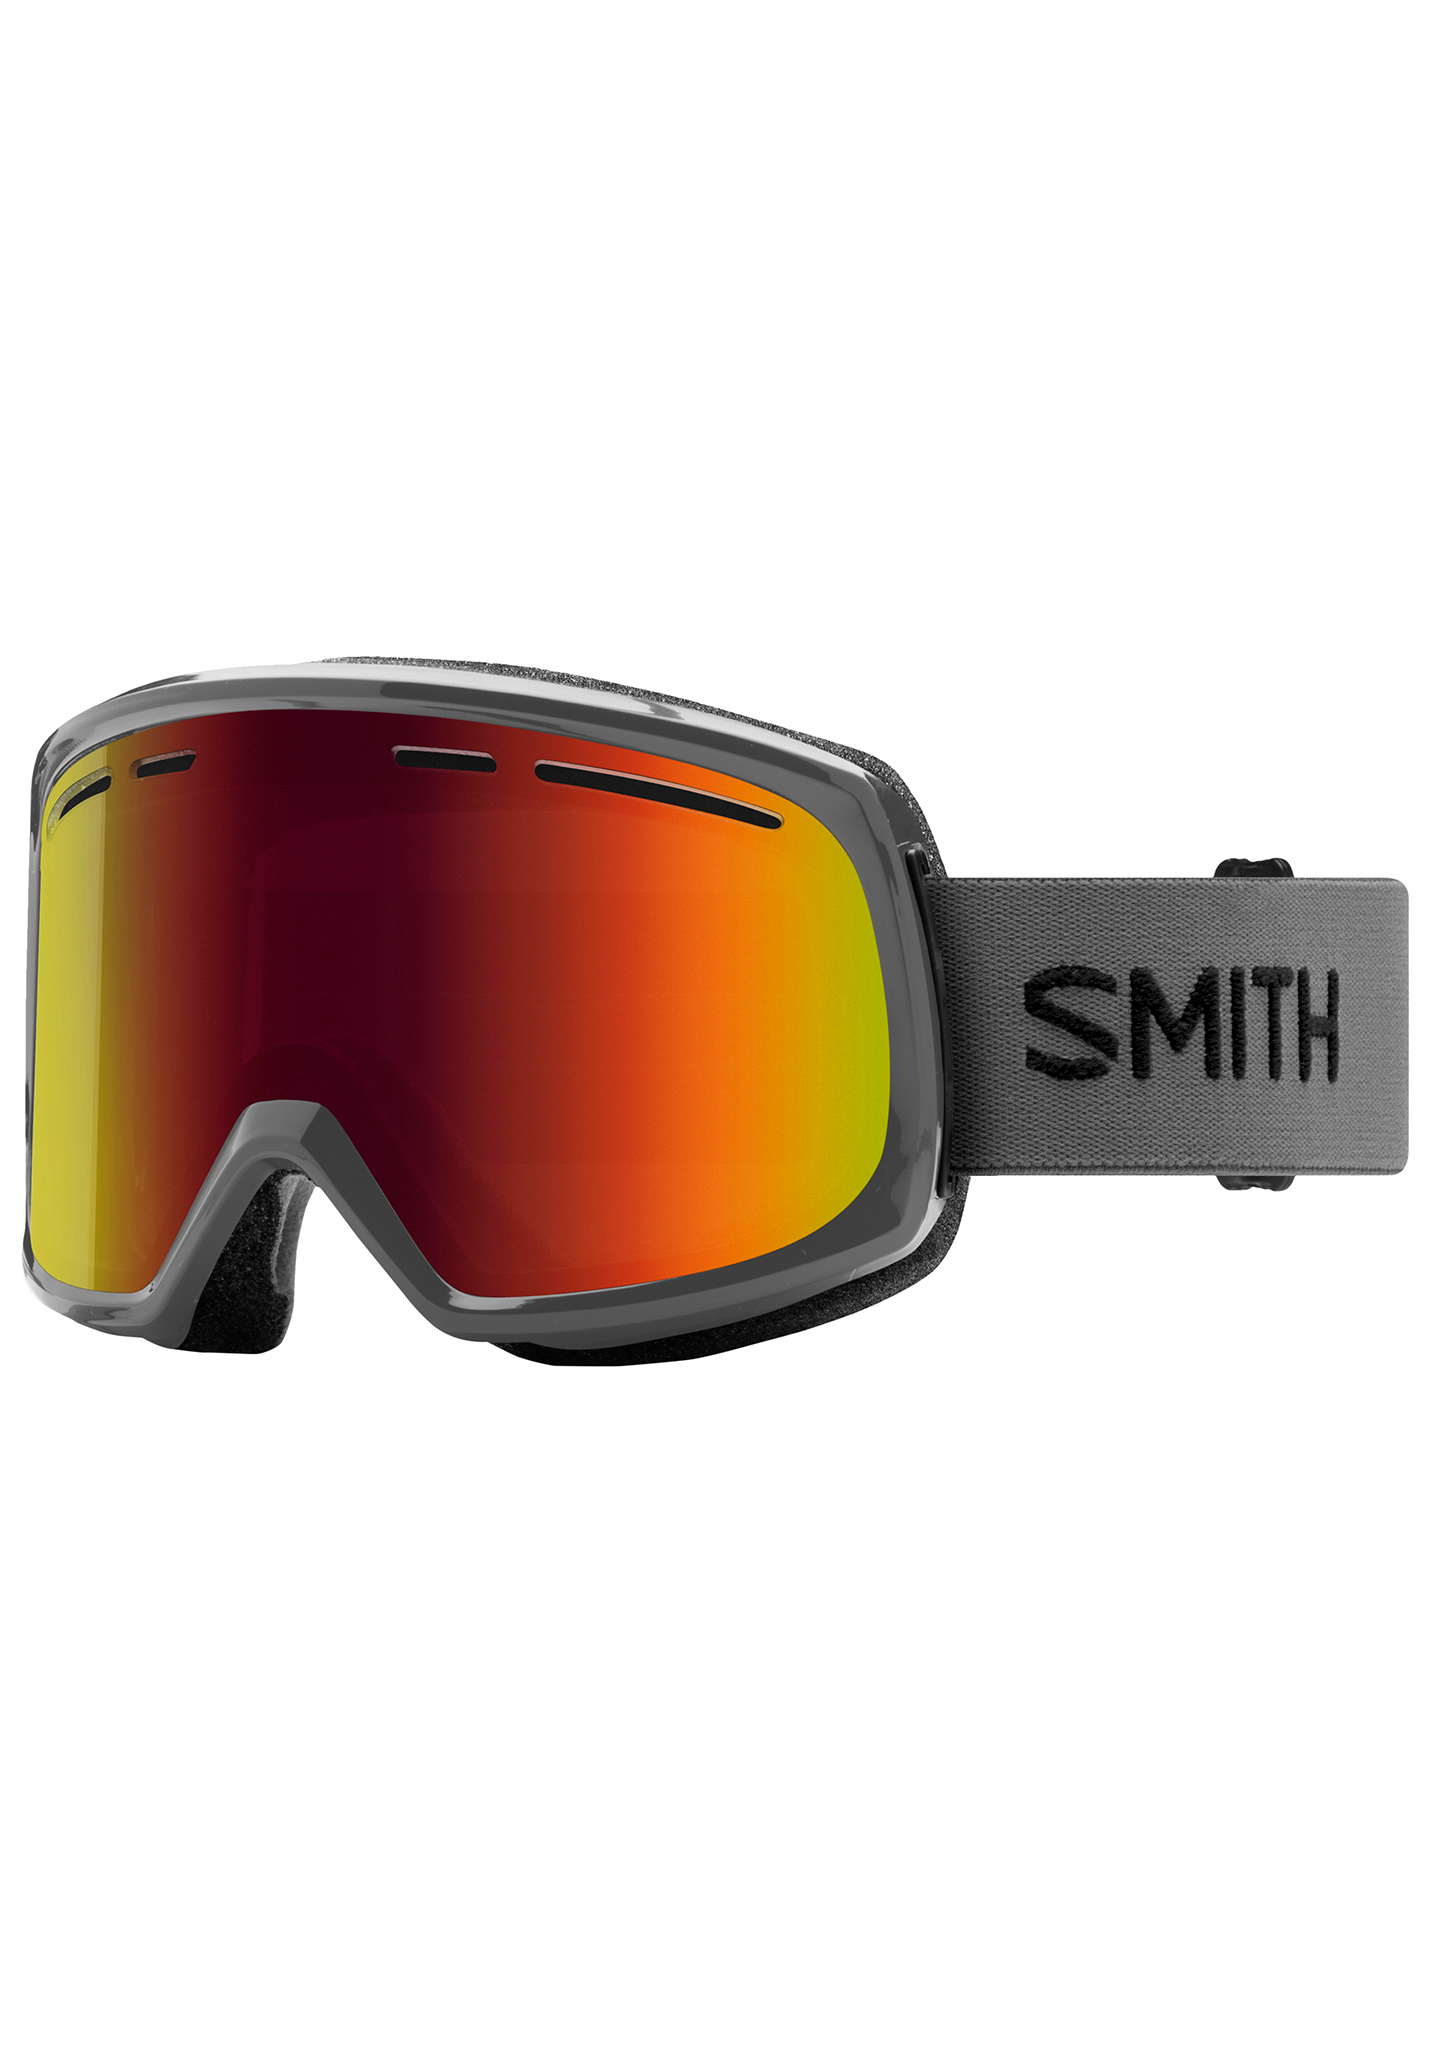 Smith Range Snowboardbrillen anthrazit / rot sol-x spiegel One Size